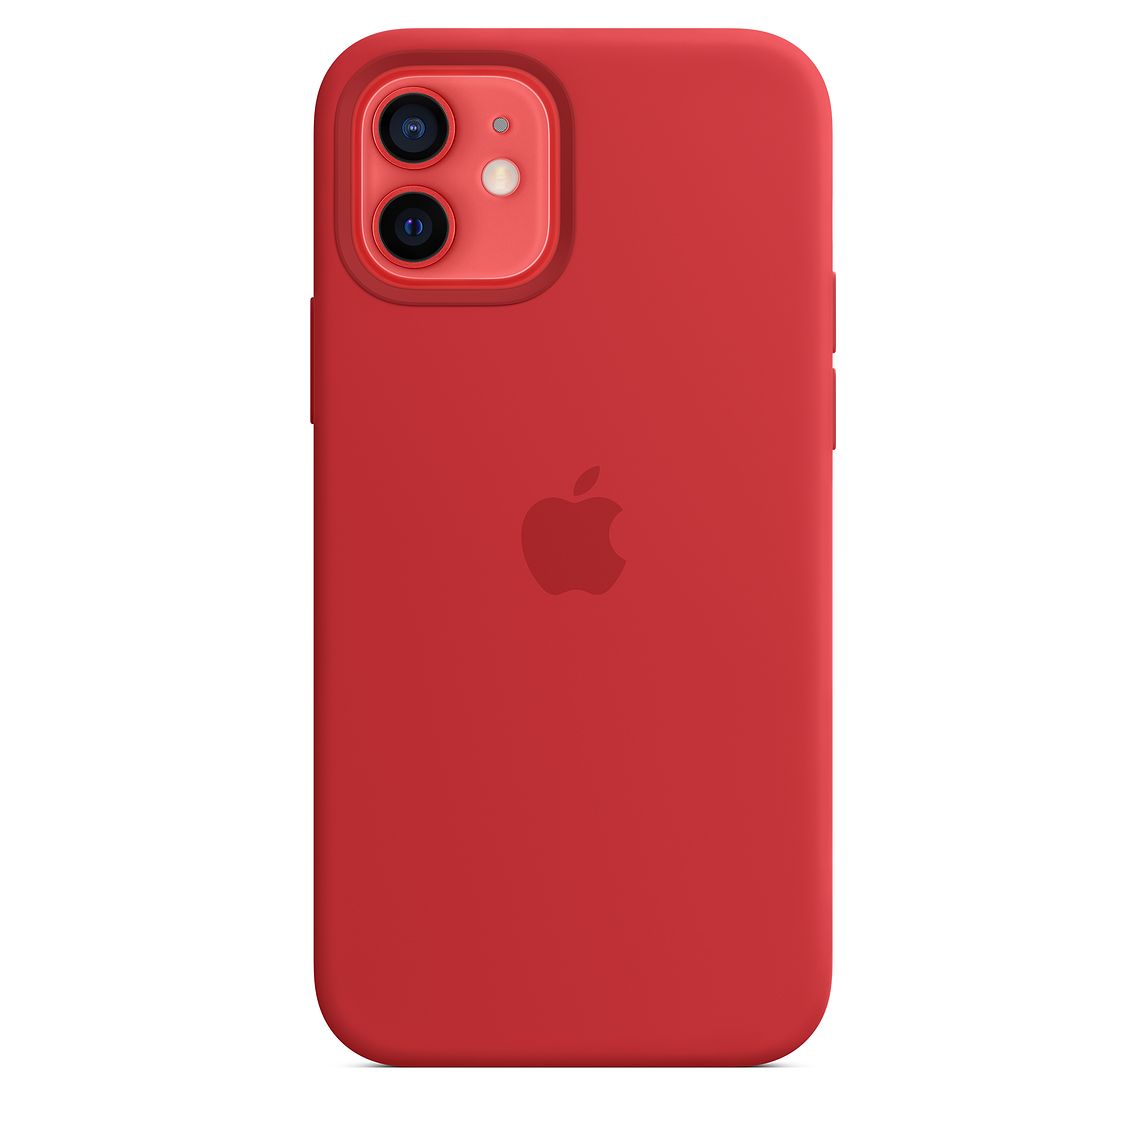 Фото — Чехол для смартфона Apple MagSafe для iPhone 12/12 Pro, cиликон, красный (PRODUCT)RED